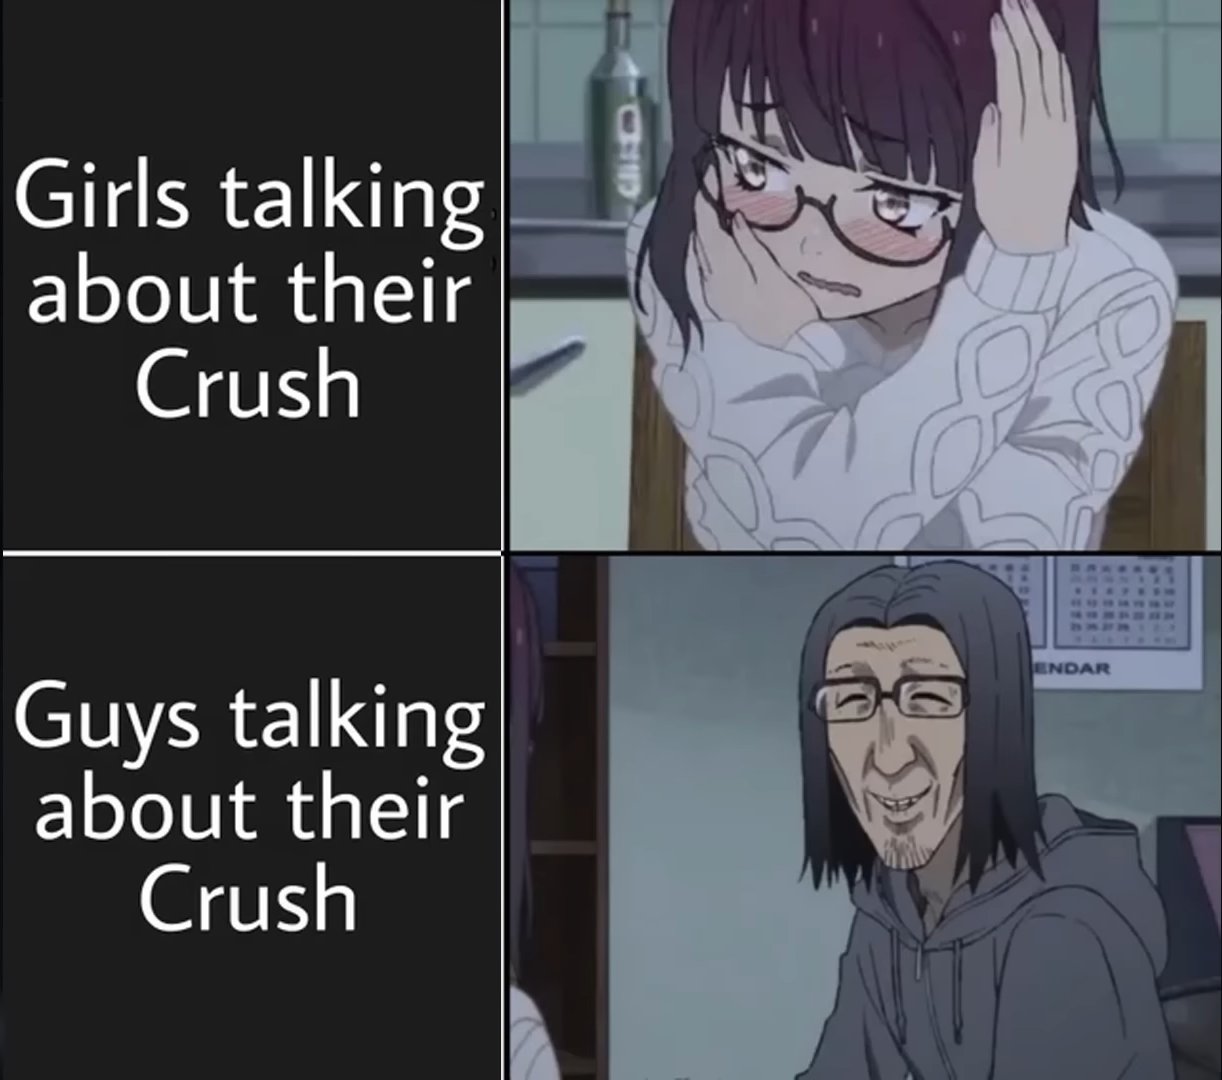 Memes anime  Meme de anime, Memes de anime, Memes otakus